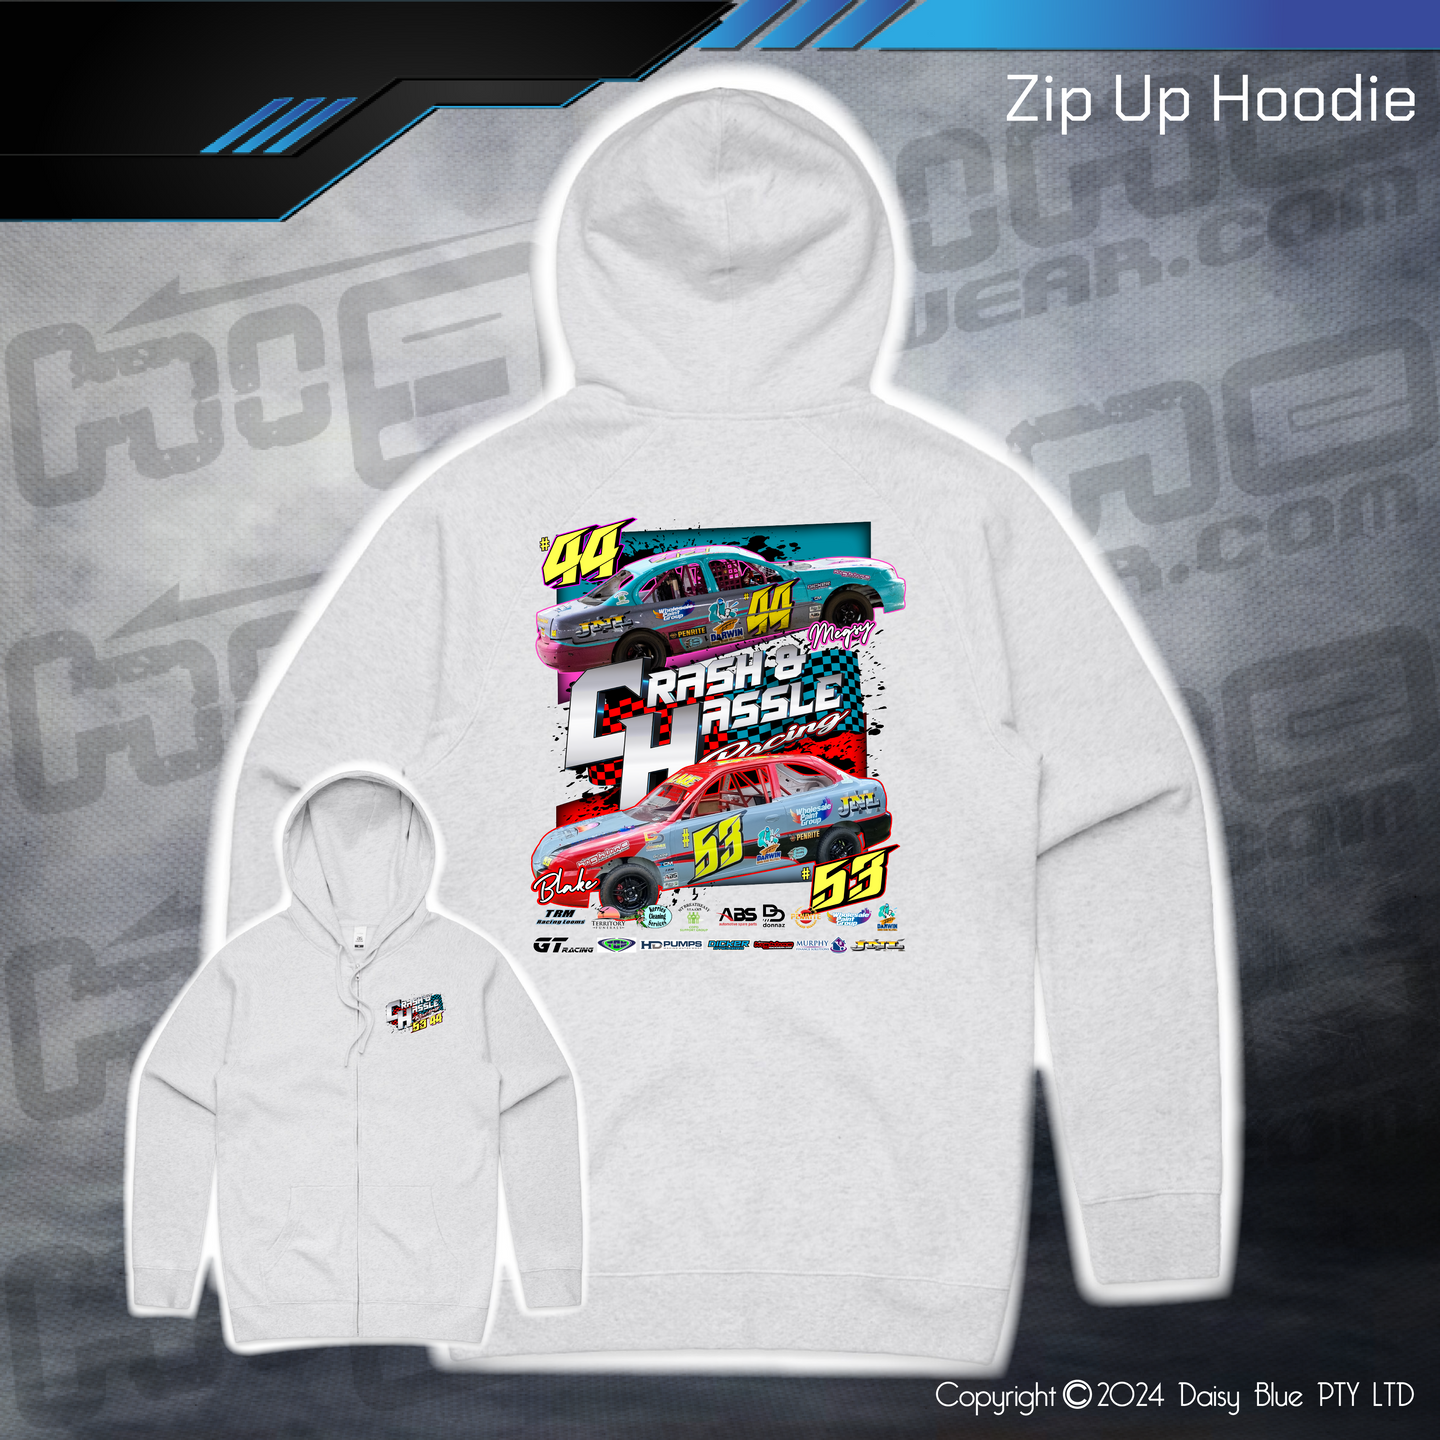 Zip Up Hoodie - Crash N Hassle Racing